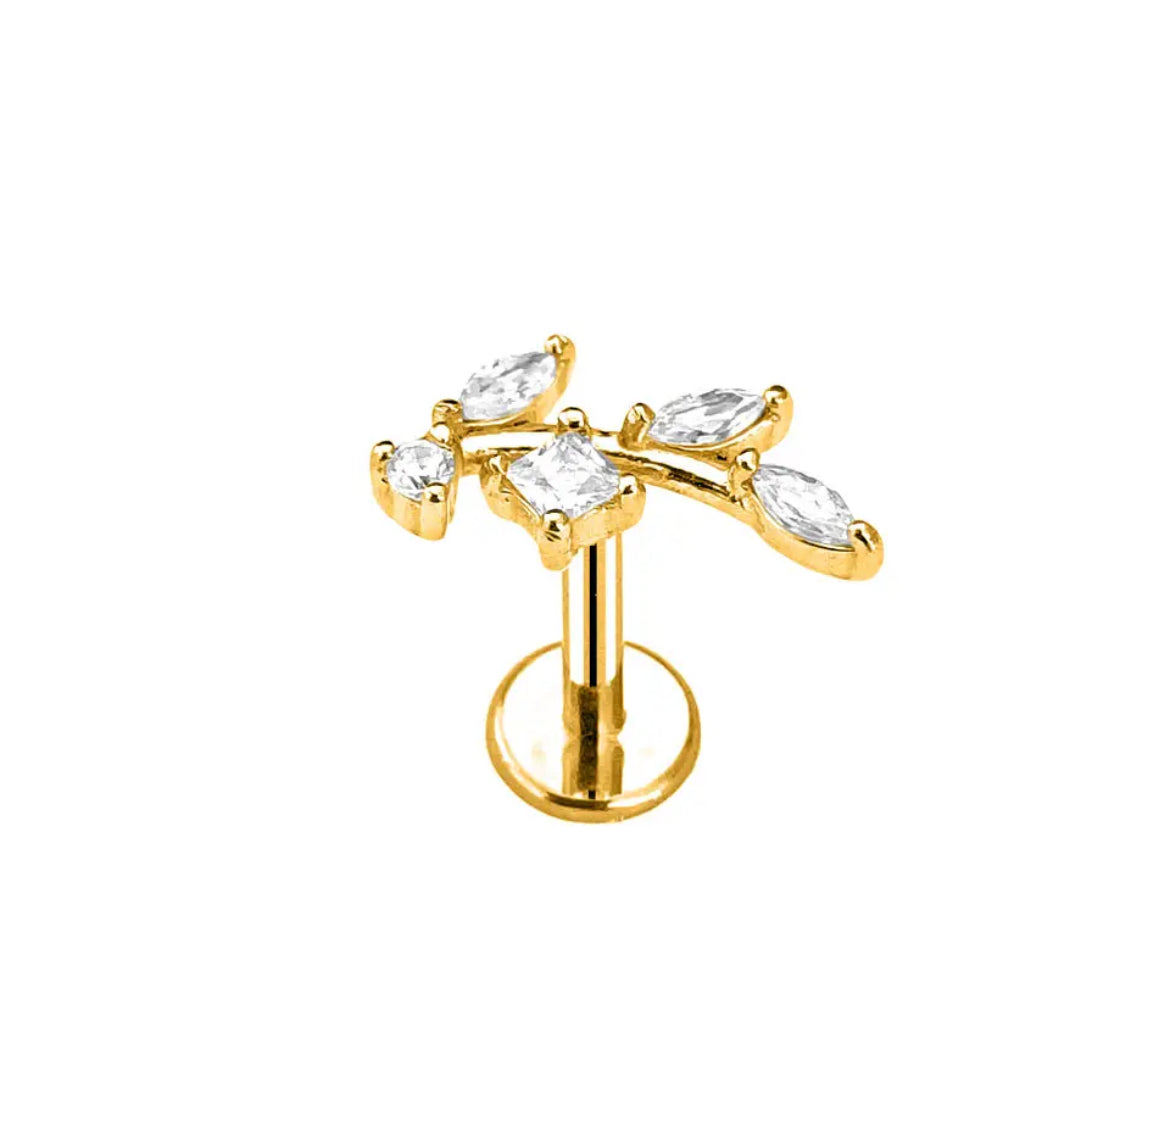 Botanical Push Pin Body Jewelry - Gold